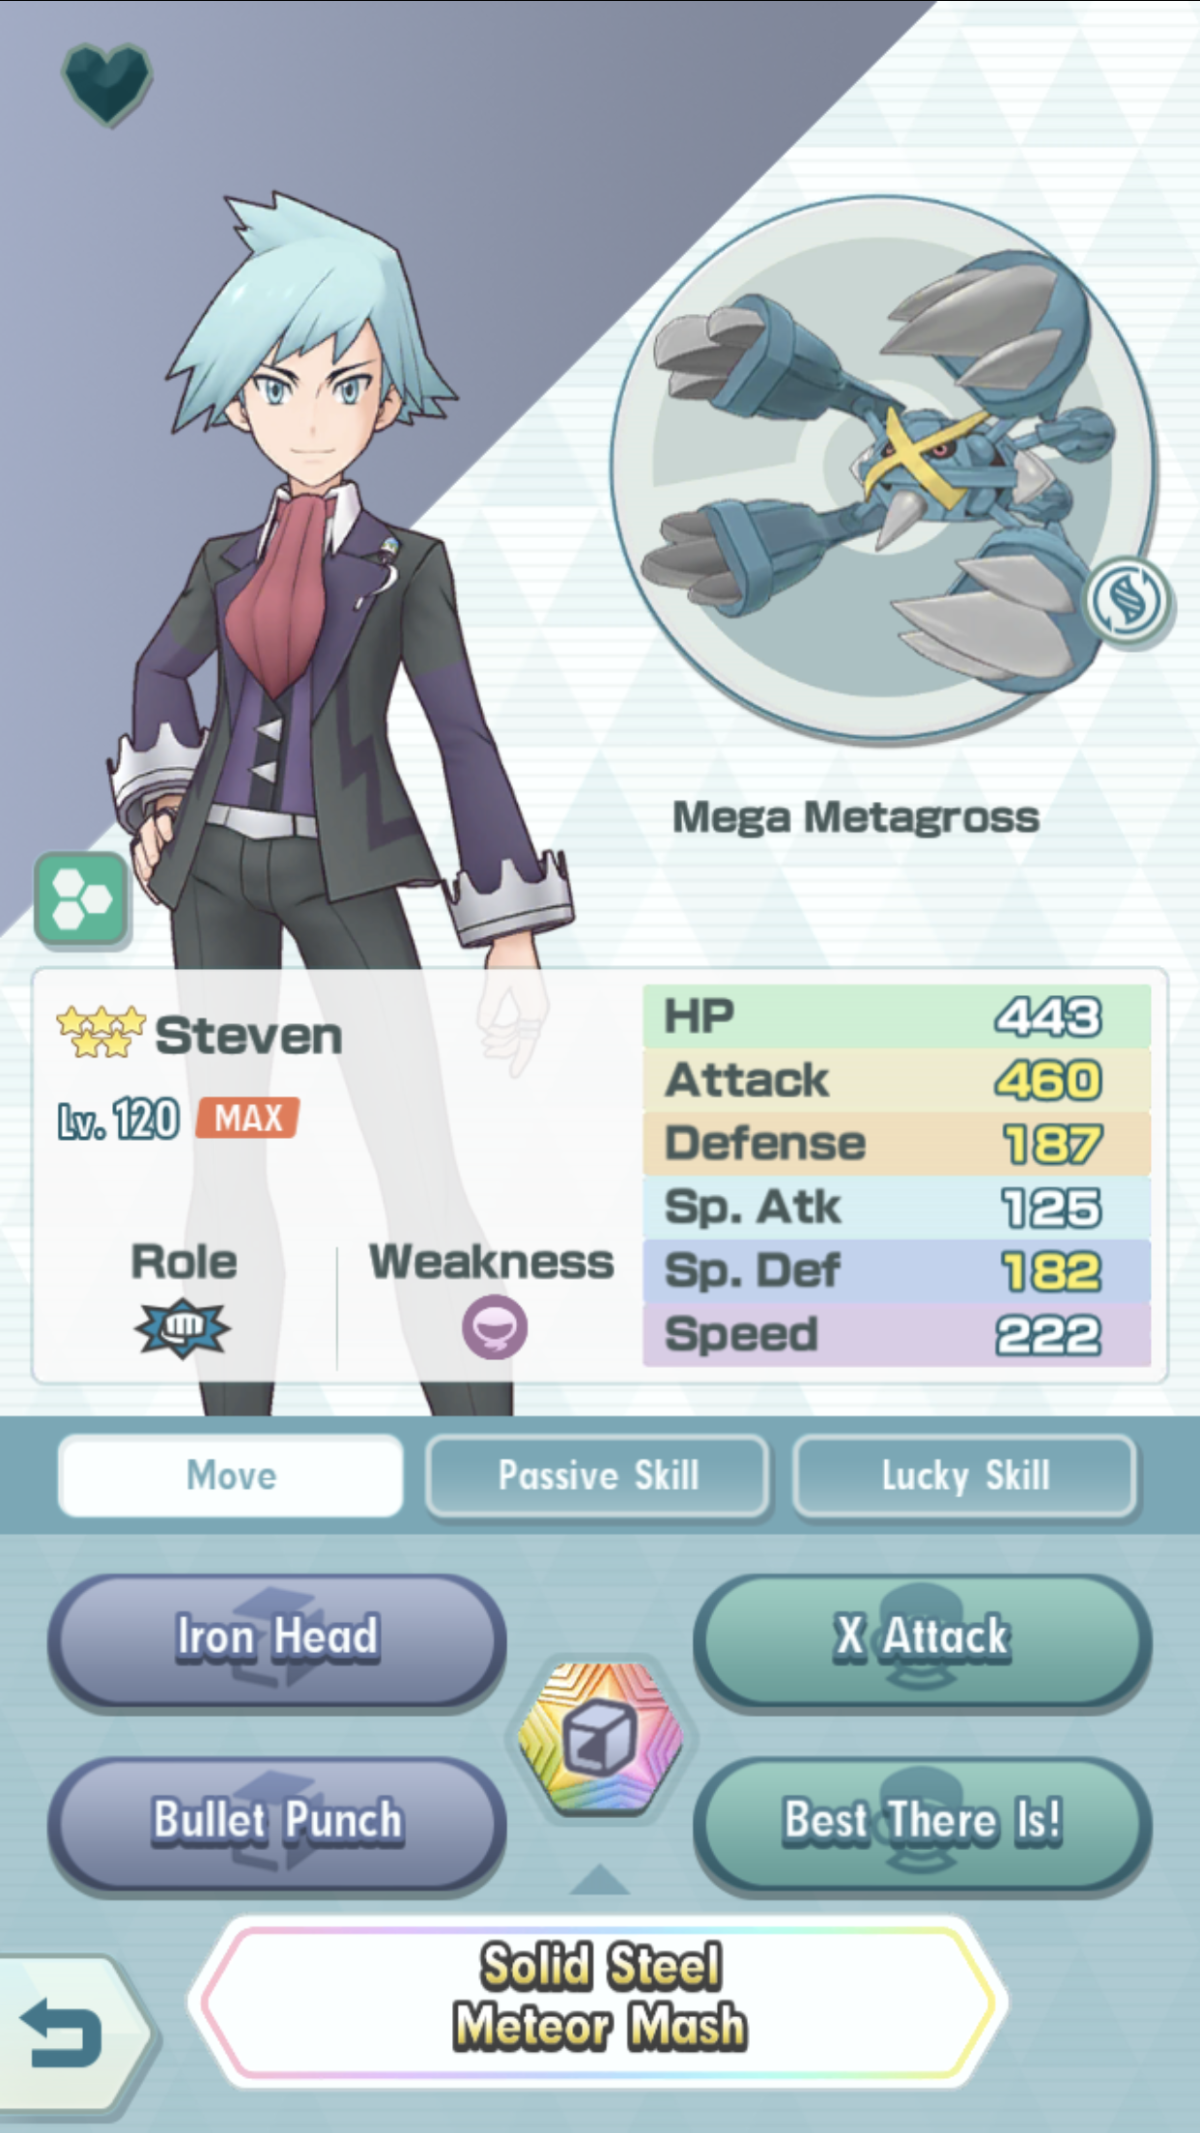 Pokémon Masters - Professor Oak and Mew Special Missions / Steven Spotlight  Poké Fair Scout 